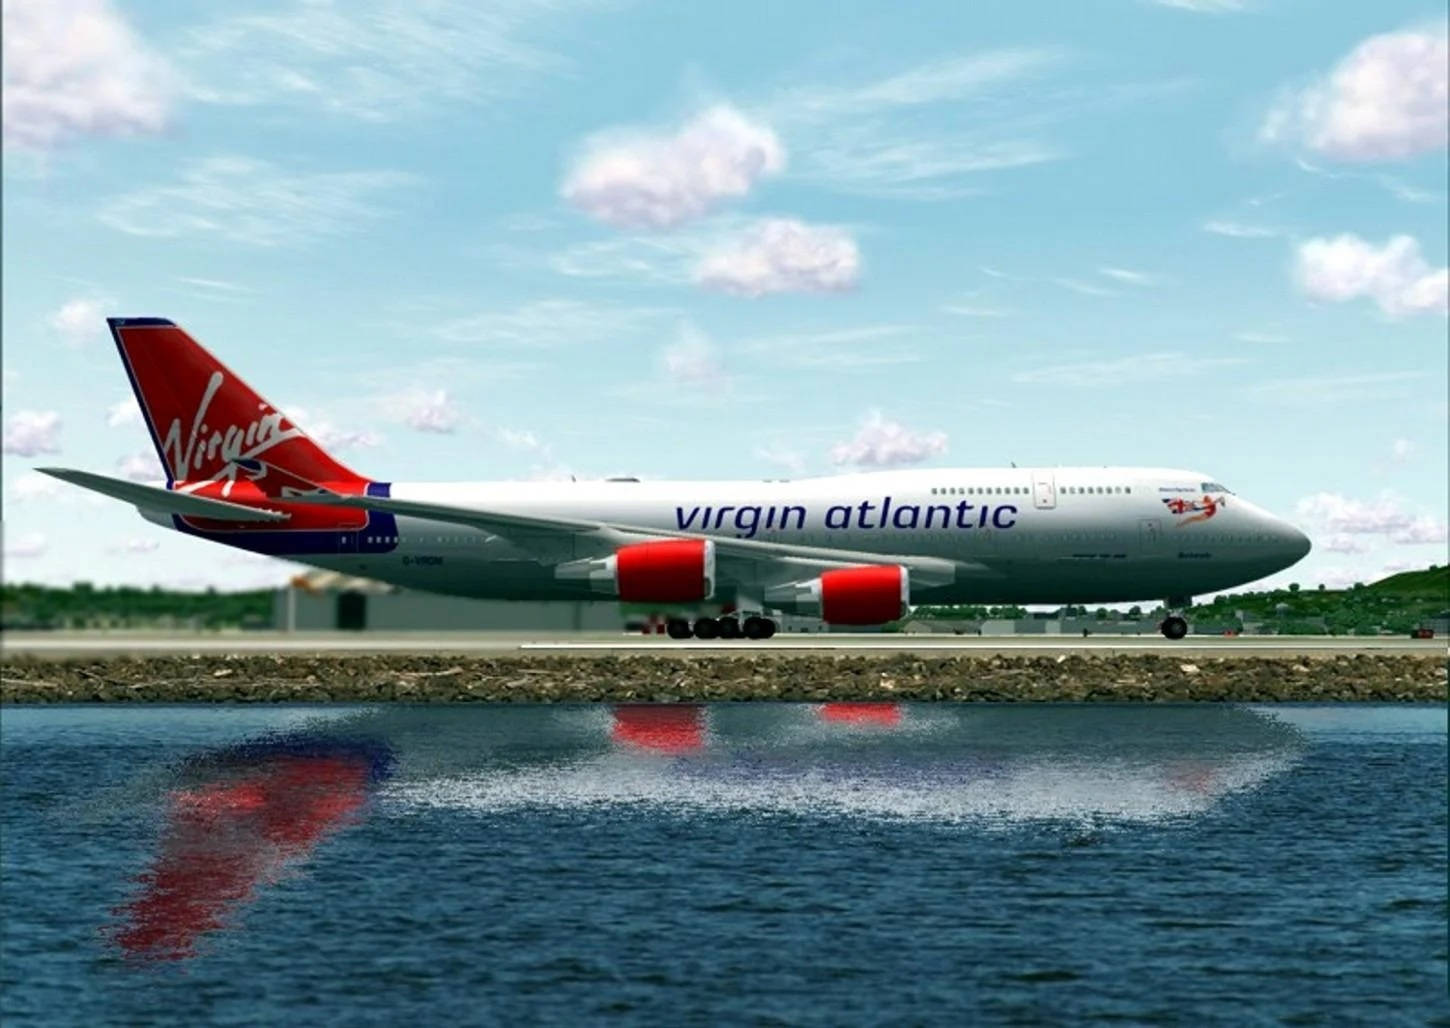 Virgin Atlantic Airplane On Runway Wallpaper